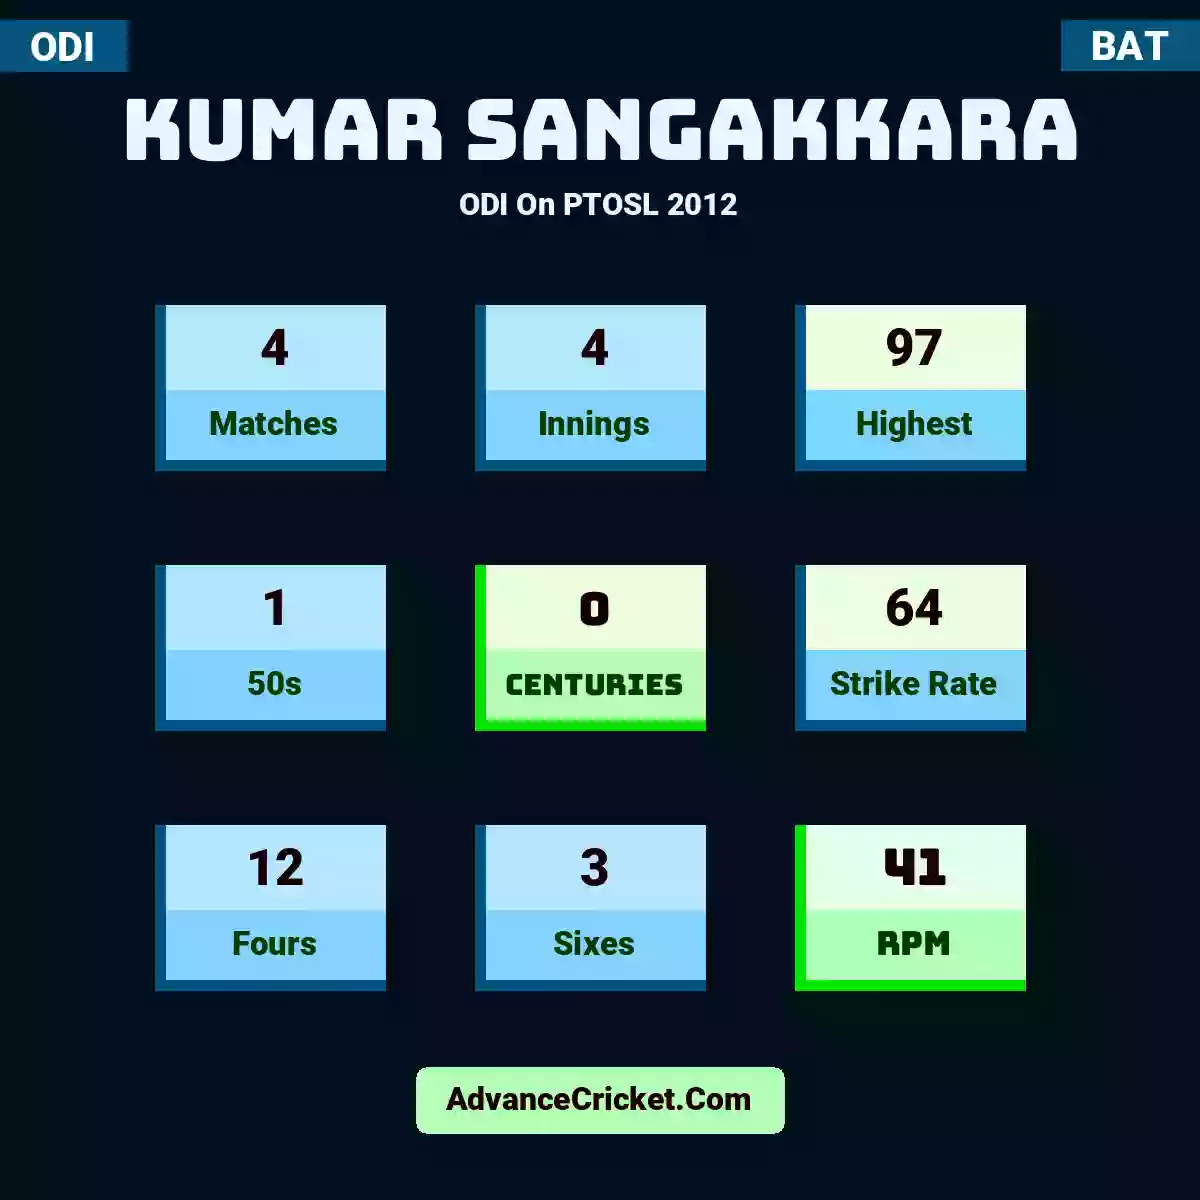 Kumar Sangakkara ODI  On PTOSL 2012, Kumar Sangakkara played 4 matches, scored 97 runs as highest, 1 half-centuries, and 0 centuries, with a strike rate of 64. K.Sangakkara hit 12 fours and 3 sixes, with an RPM of 41.